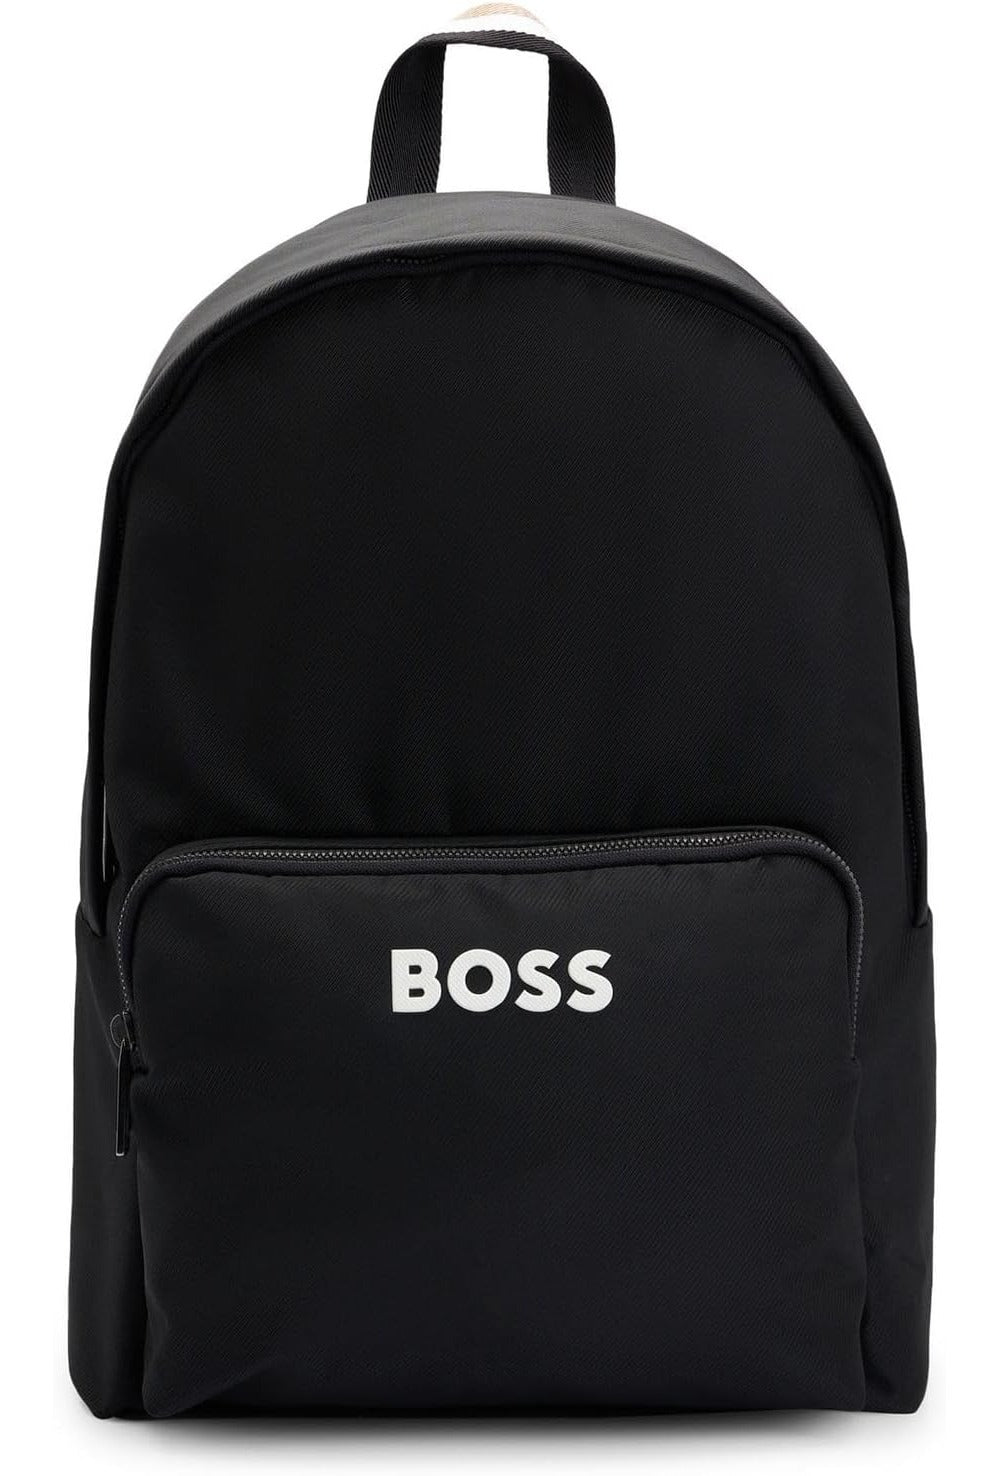 Hugo Boss Men's Catch 3.0 Backpack, Black